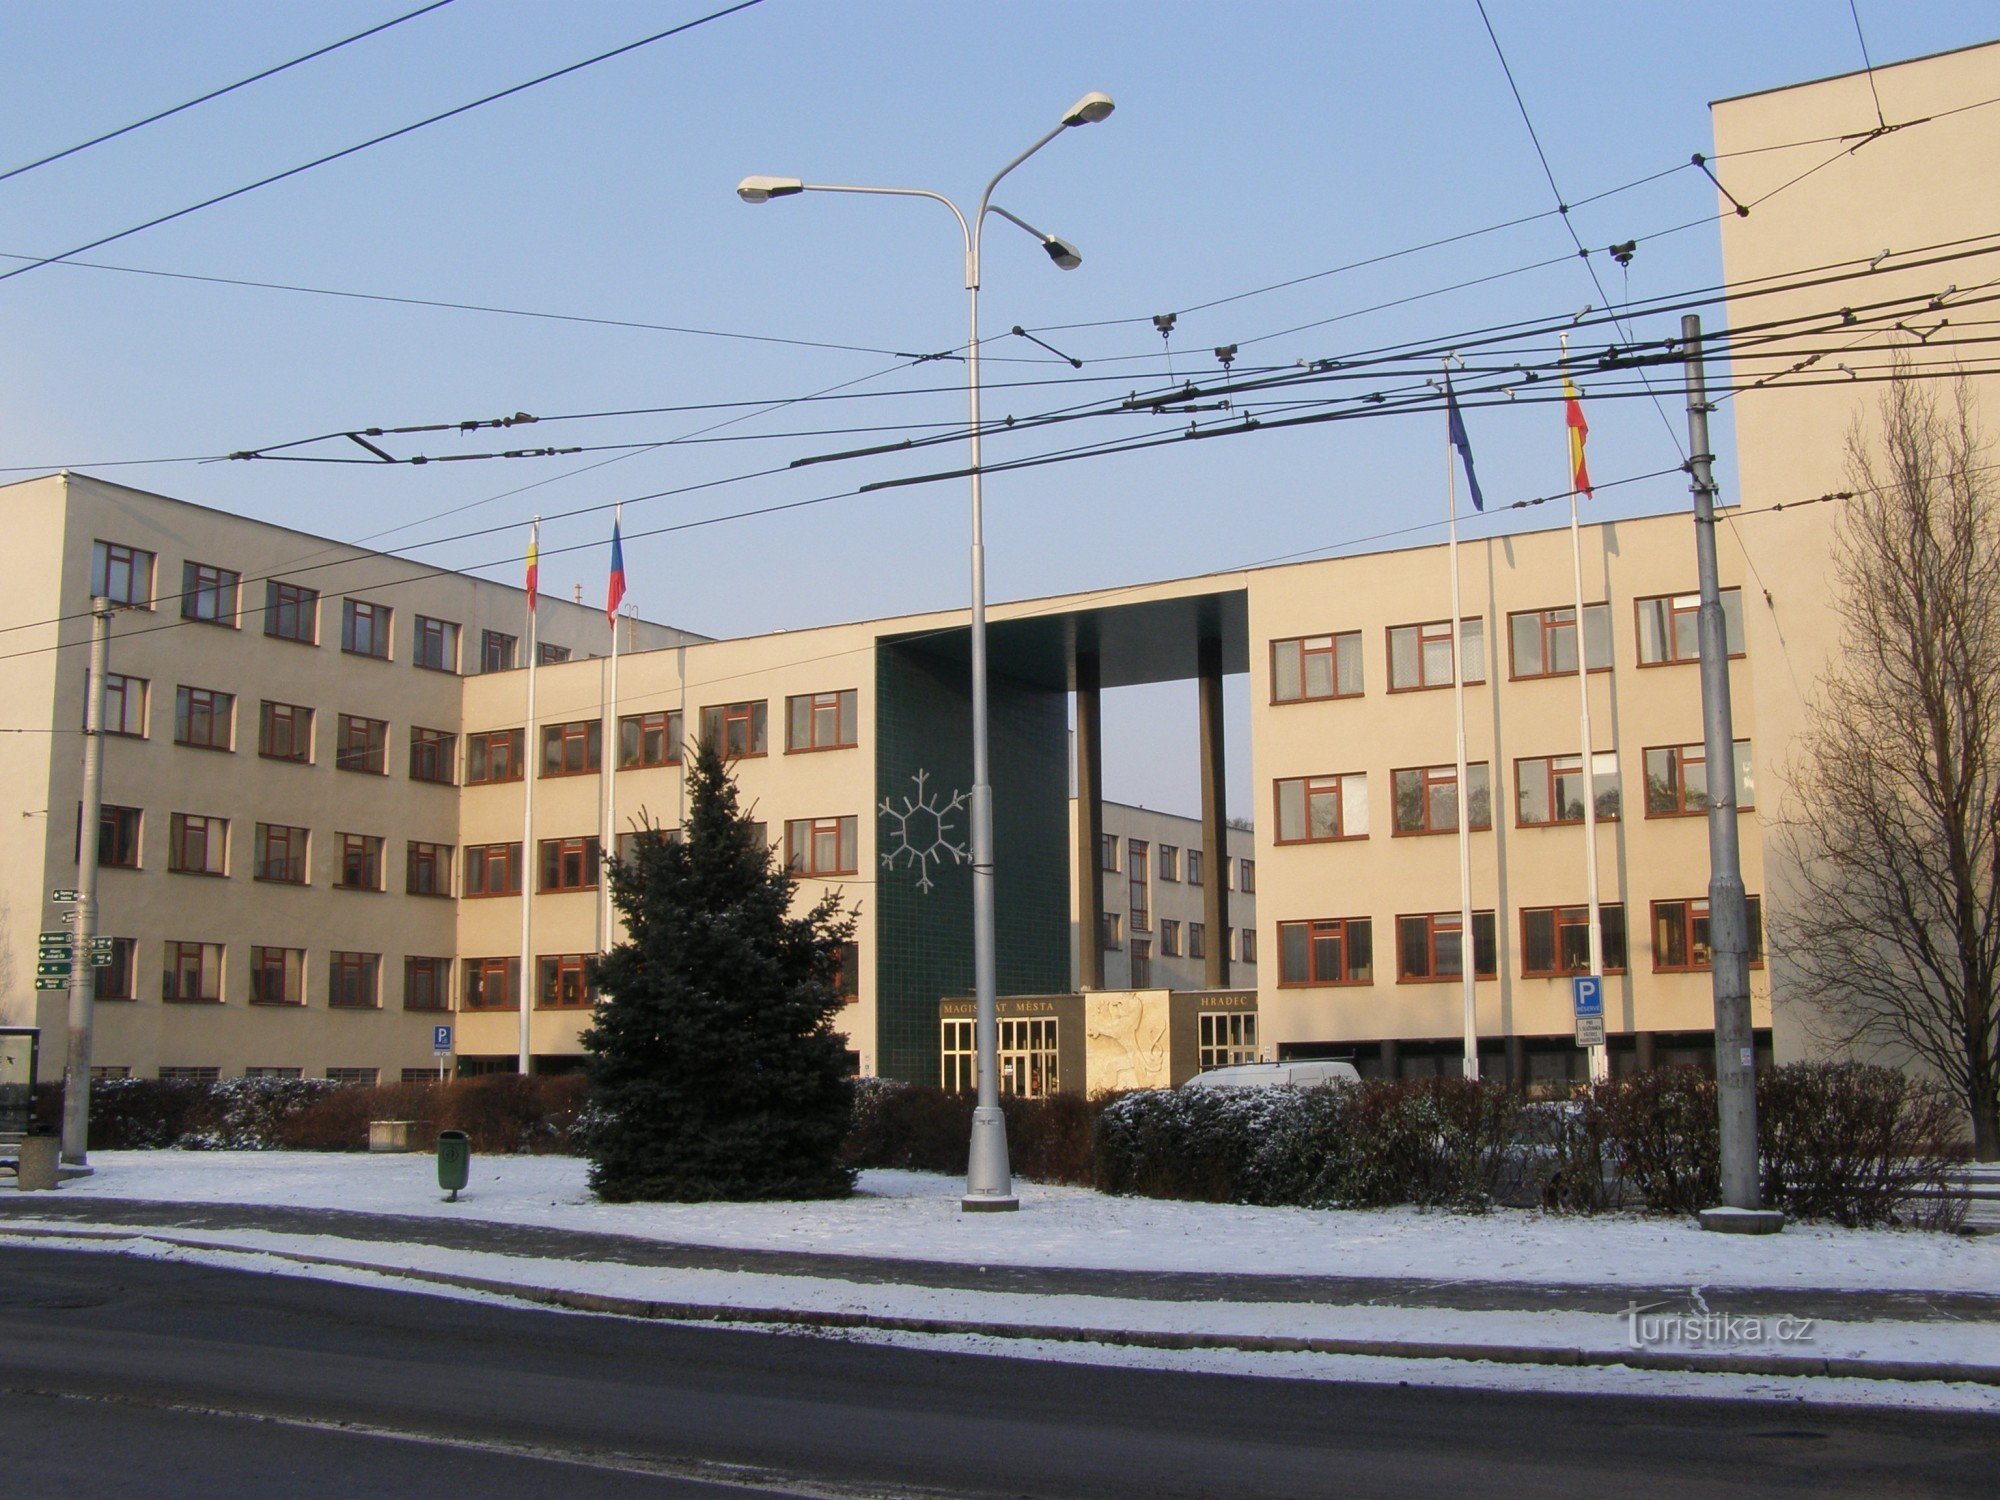 Hradec Králové - Gočárův District and Financial Office